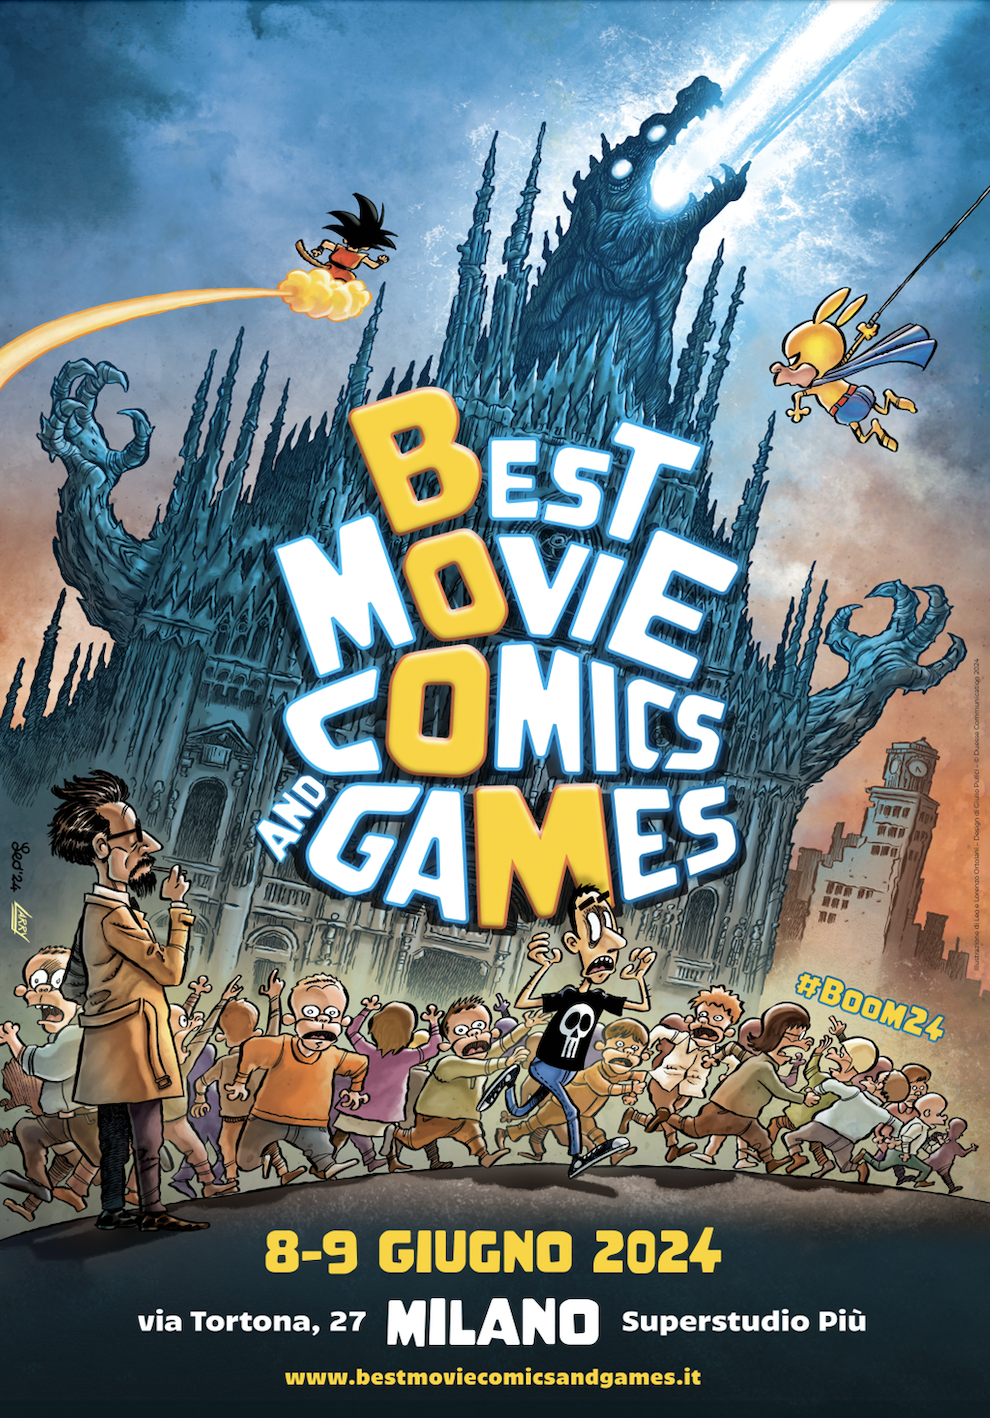 Best Movie Comics and Games 2024: il poster di Leo Ortolani con Milano invasa dai fumetti e i primi grandi ospiti